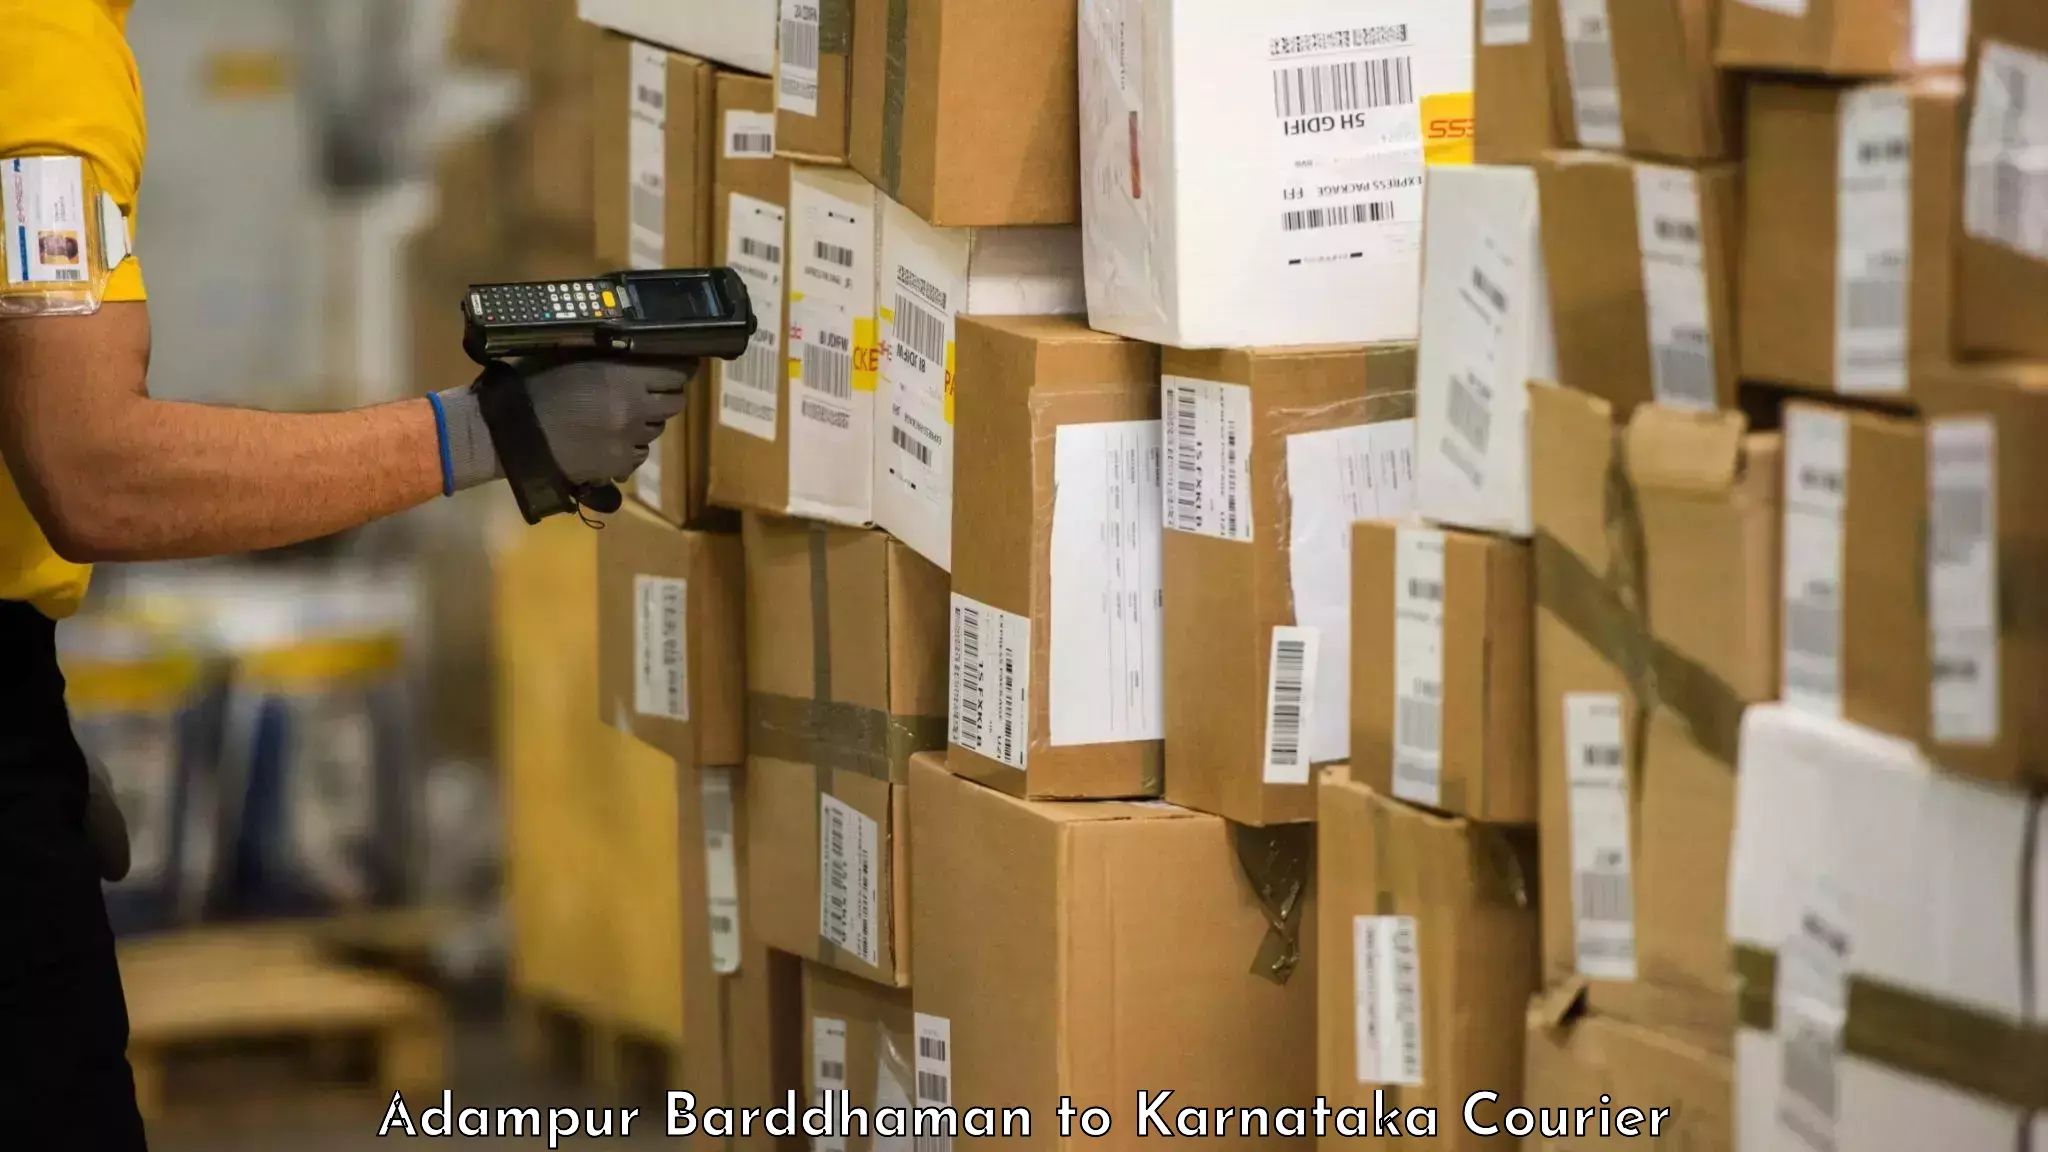 Baggage delivery estimate Adampur Barddhaman to Gurmatkal